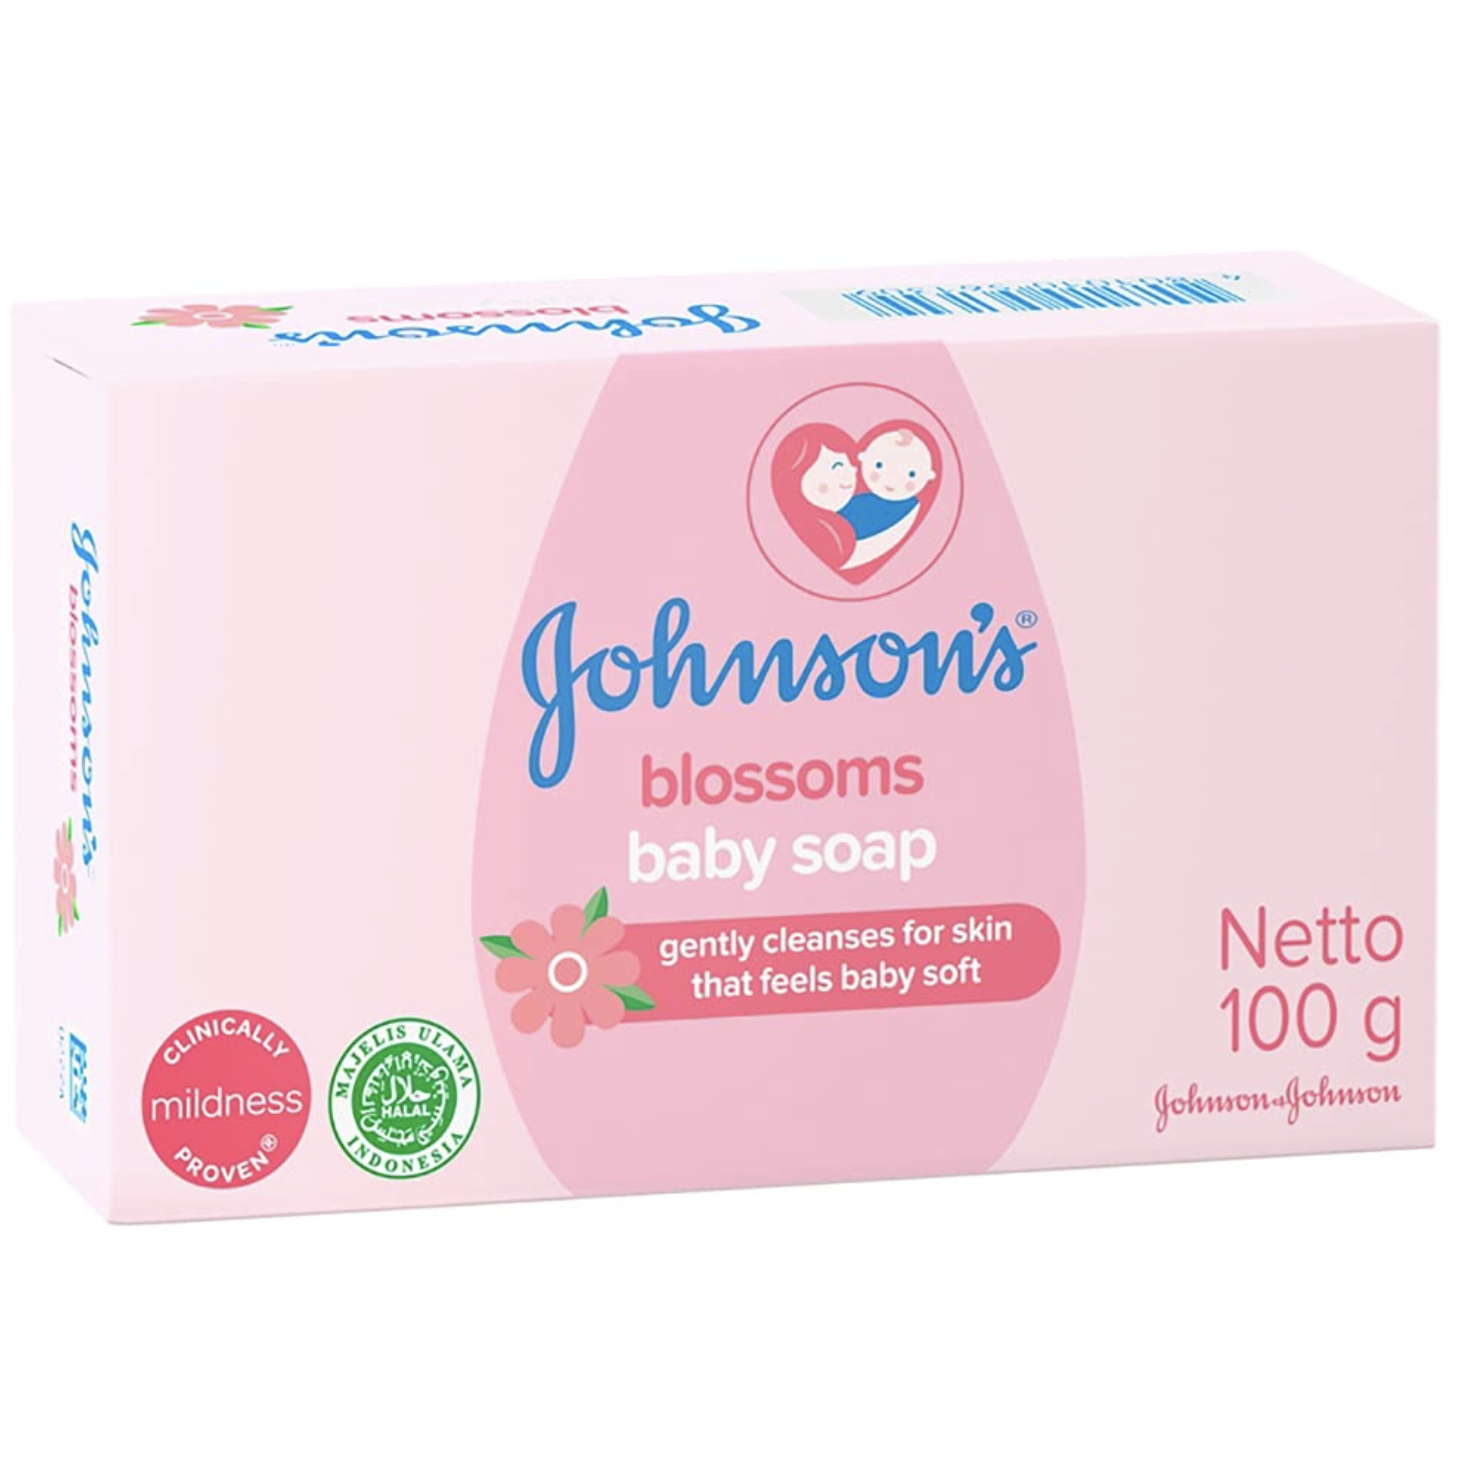 картинка Джонсонс / Johnson`s Baby Soap - Мыло туалетное детское blossoms 100 г